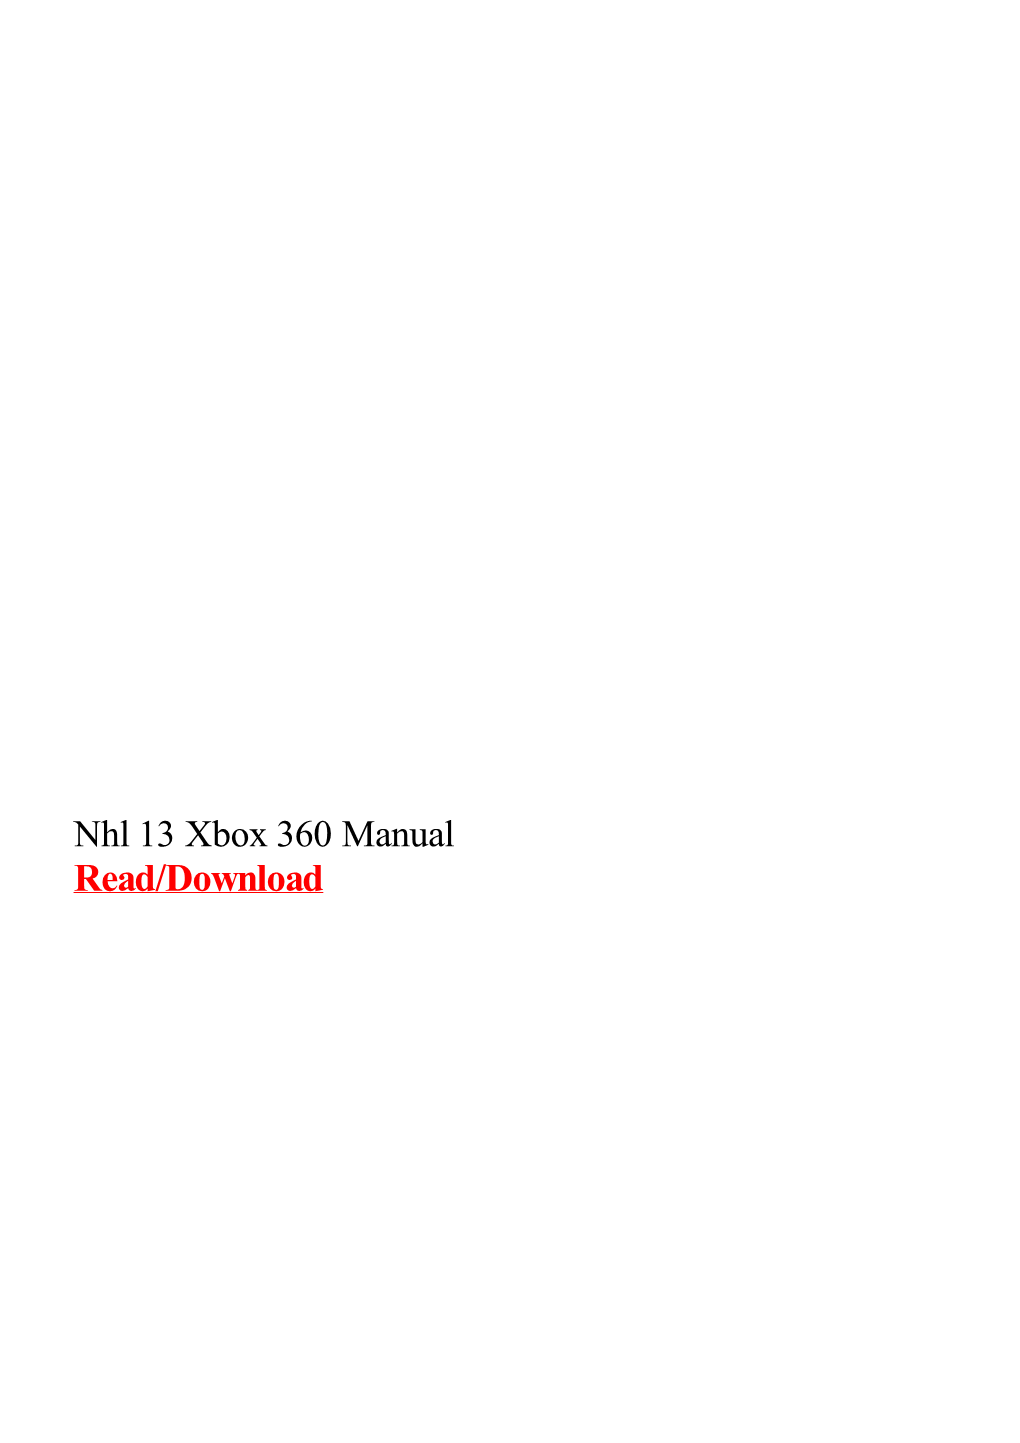 Nhl 13 Xbox 360 Manual.Pdf